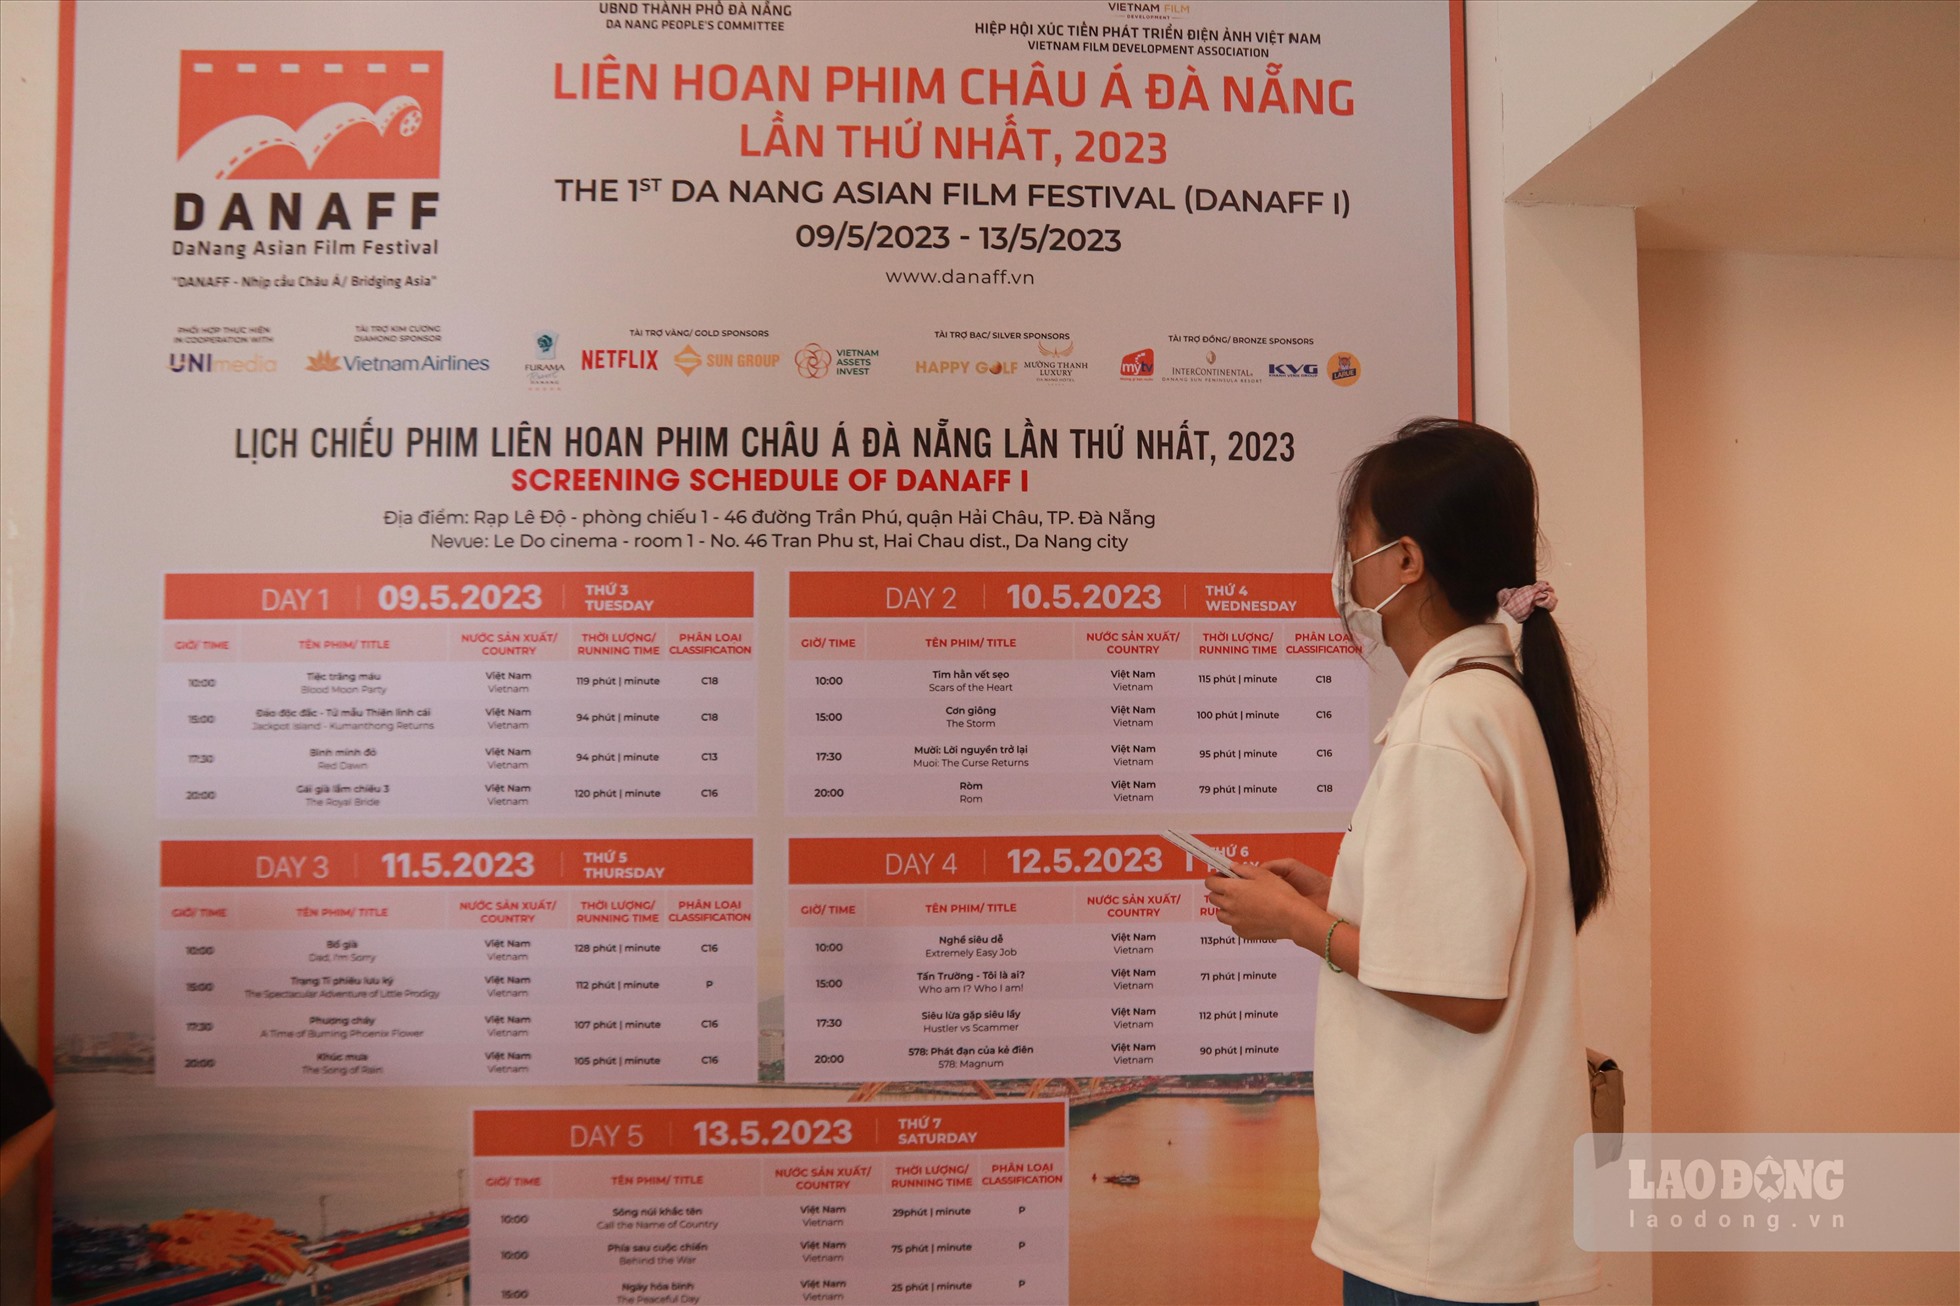 Nguyễn Lê Thảo ly đến rạp Lê Độ để theo dõi lịch chiếu và xem các phim ở liên hoan phim châu Á Đà Nẵng lần thứ nhất năm 2023.